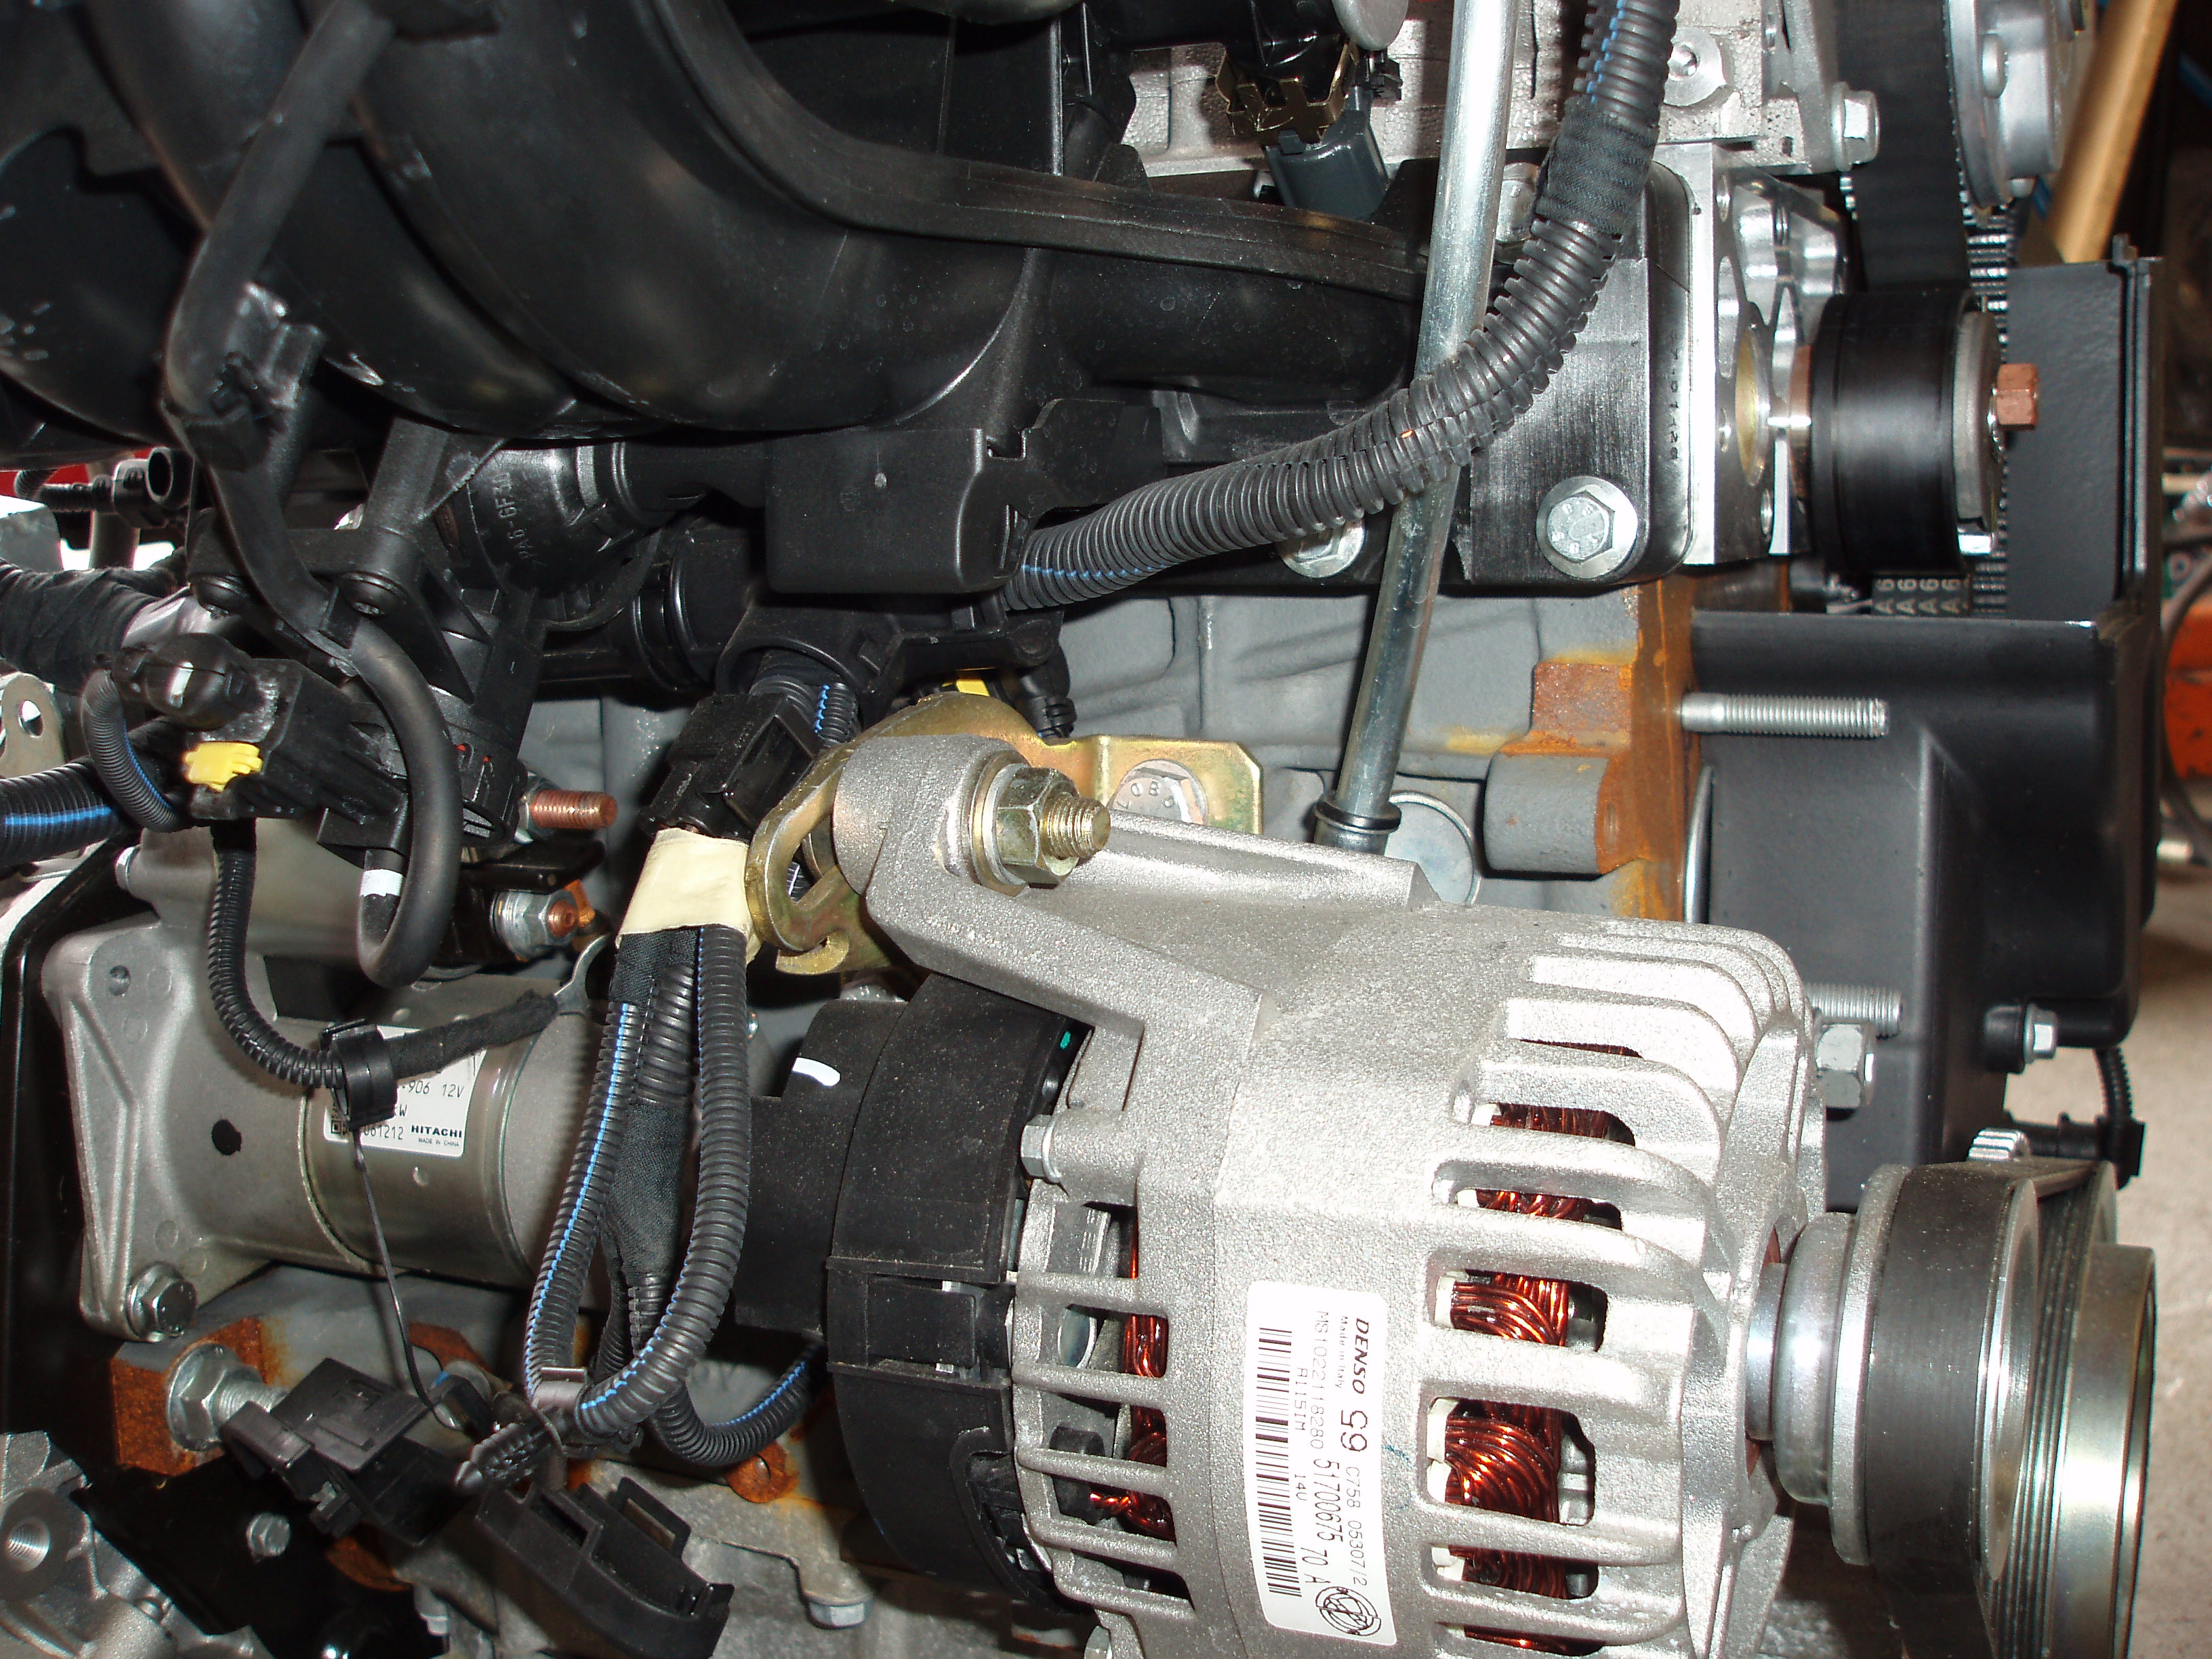 1368cc 16V engine for Cinq 4